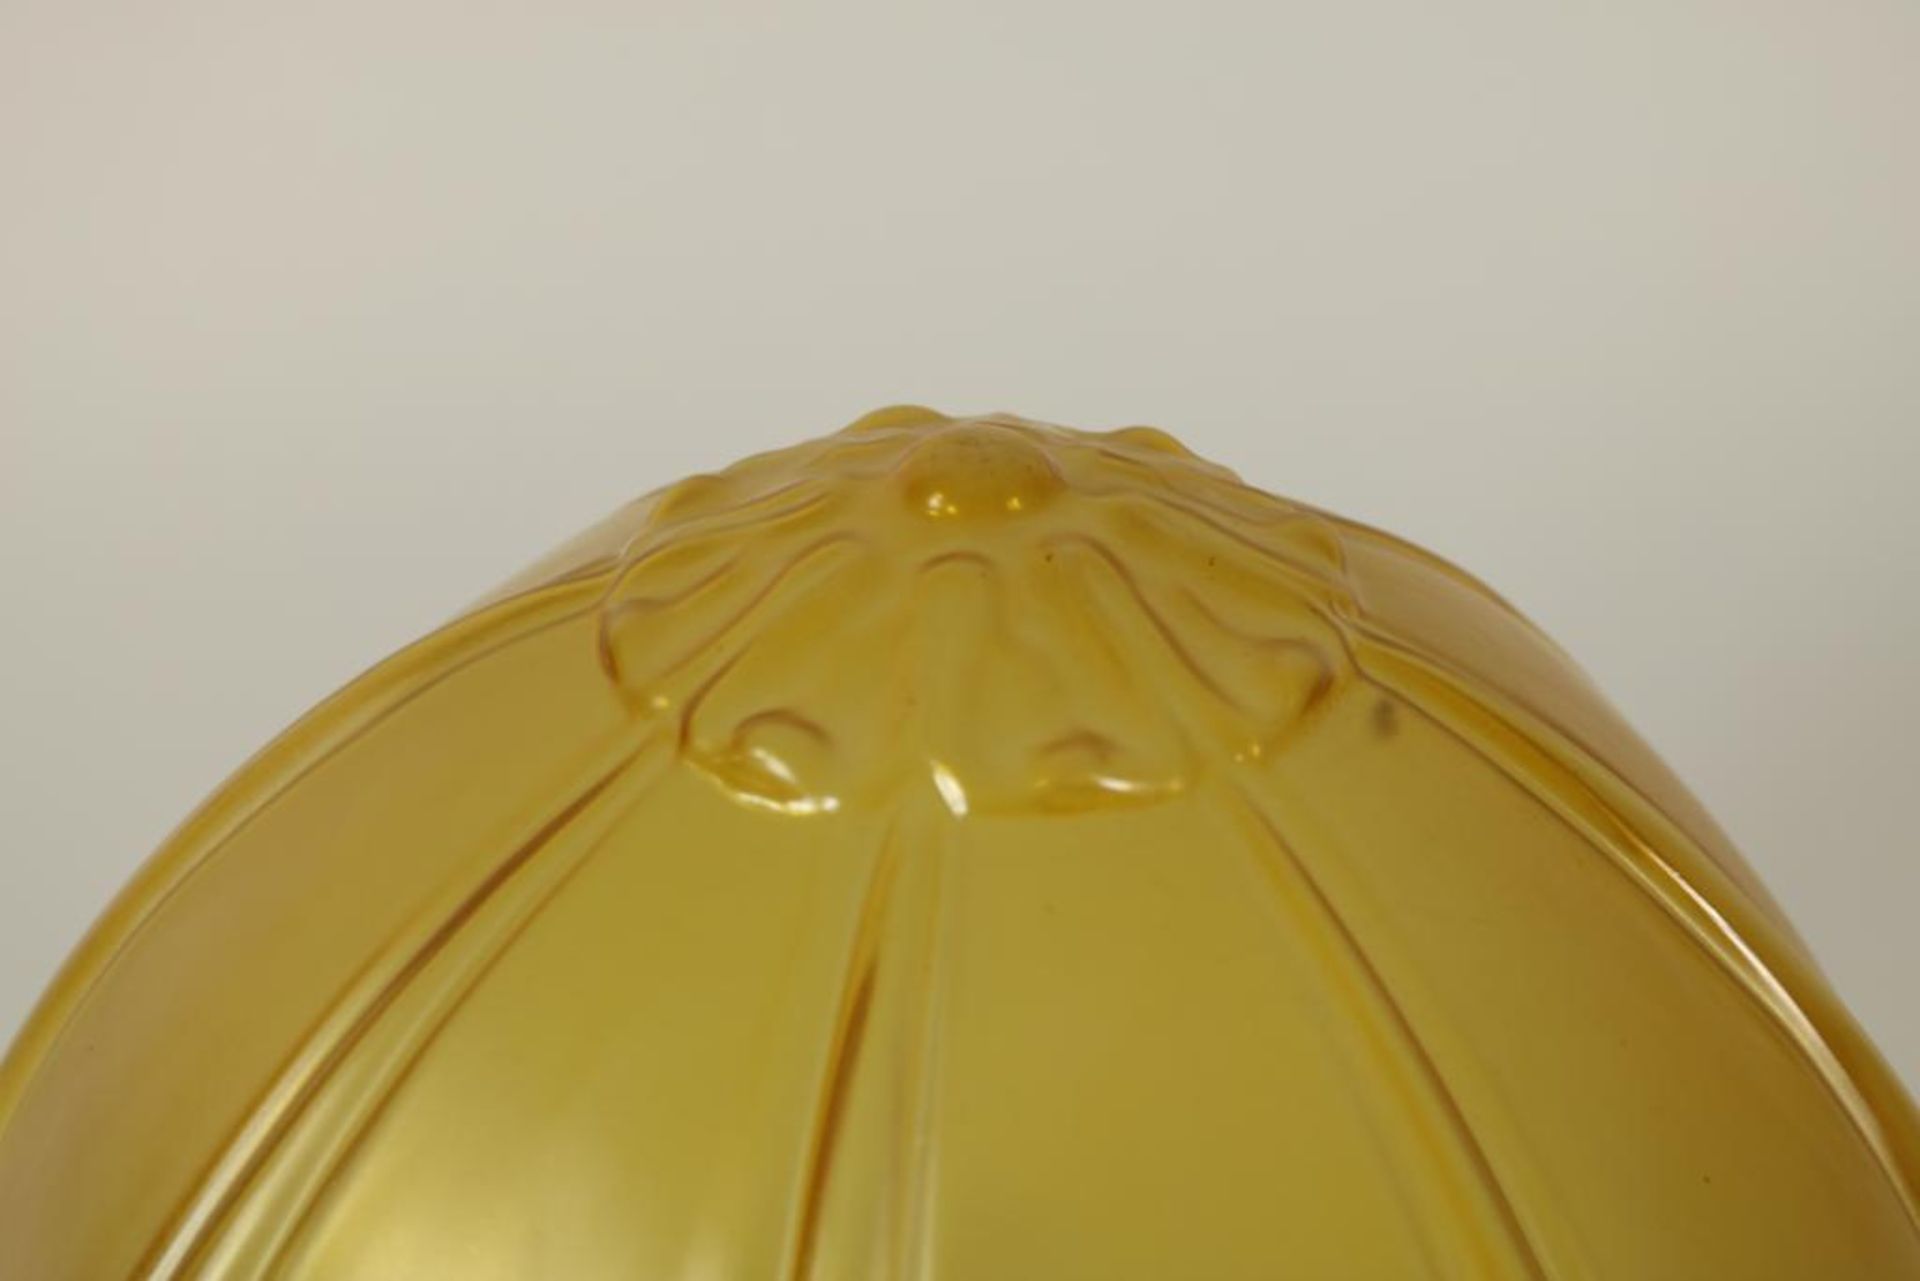 Plafonniere lamp met geel glazen kap met relief van guirlandes, h. 40 cm. - Bild 3 aus 3